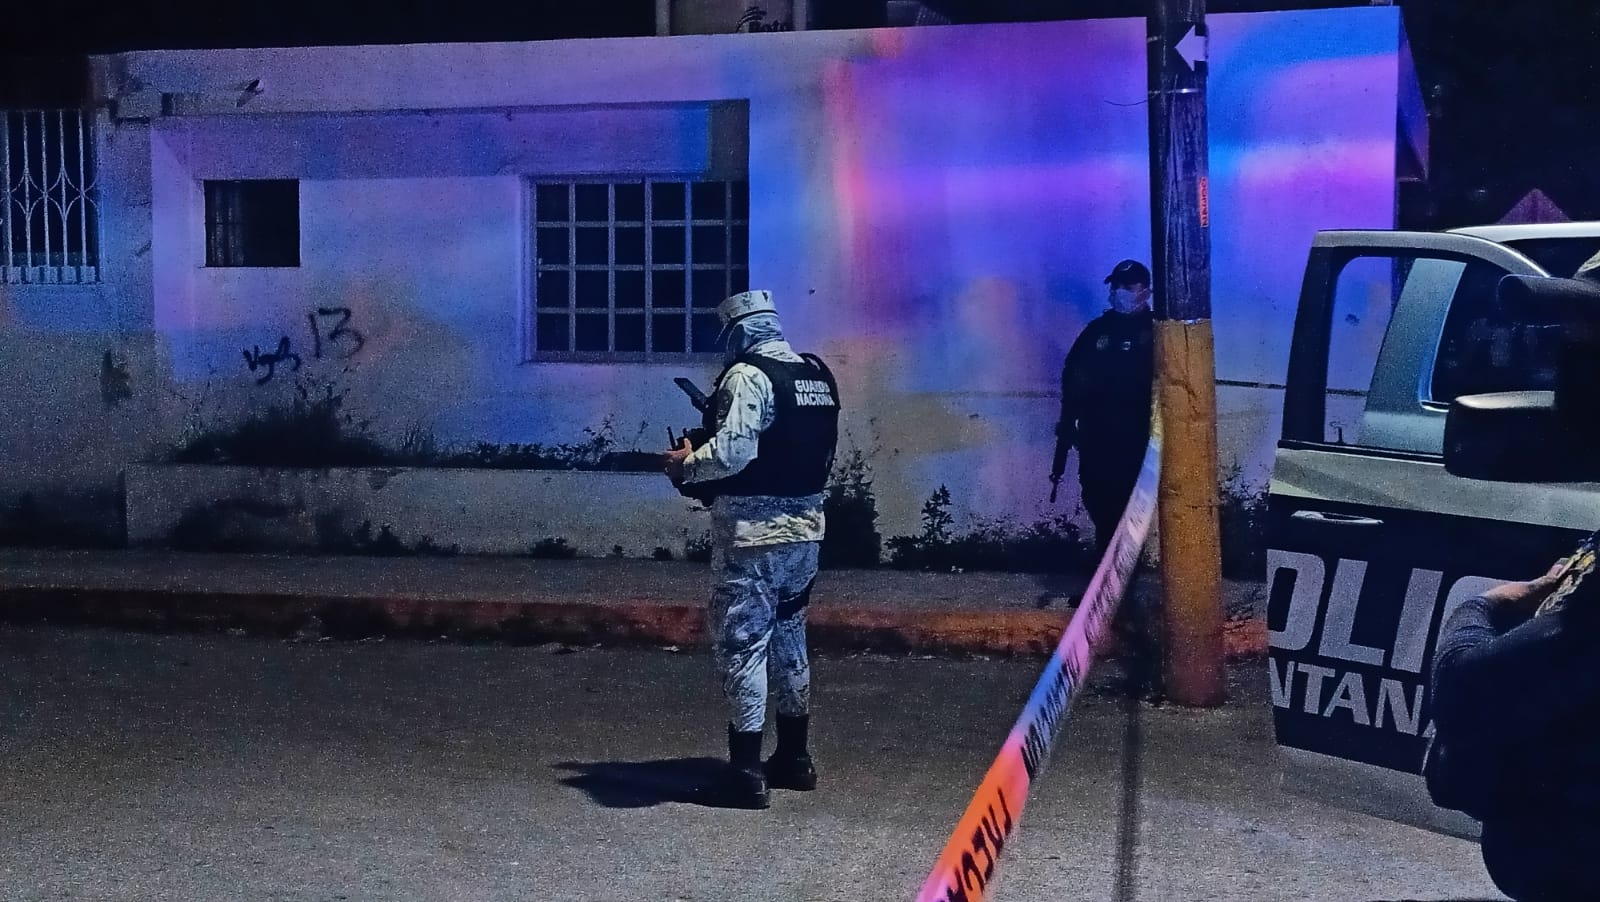 Colocan dos mantas con amenazas a unos metros de la policía de Cozumel